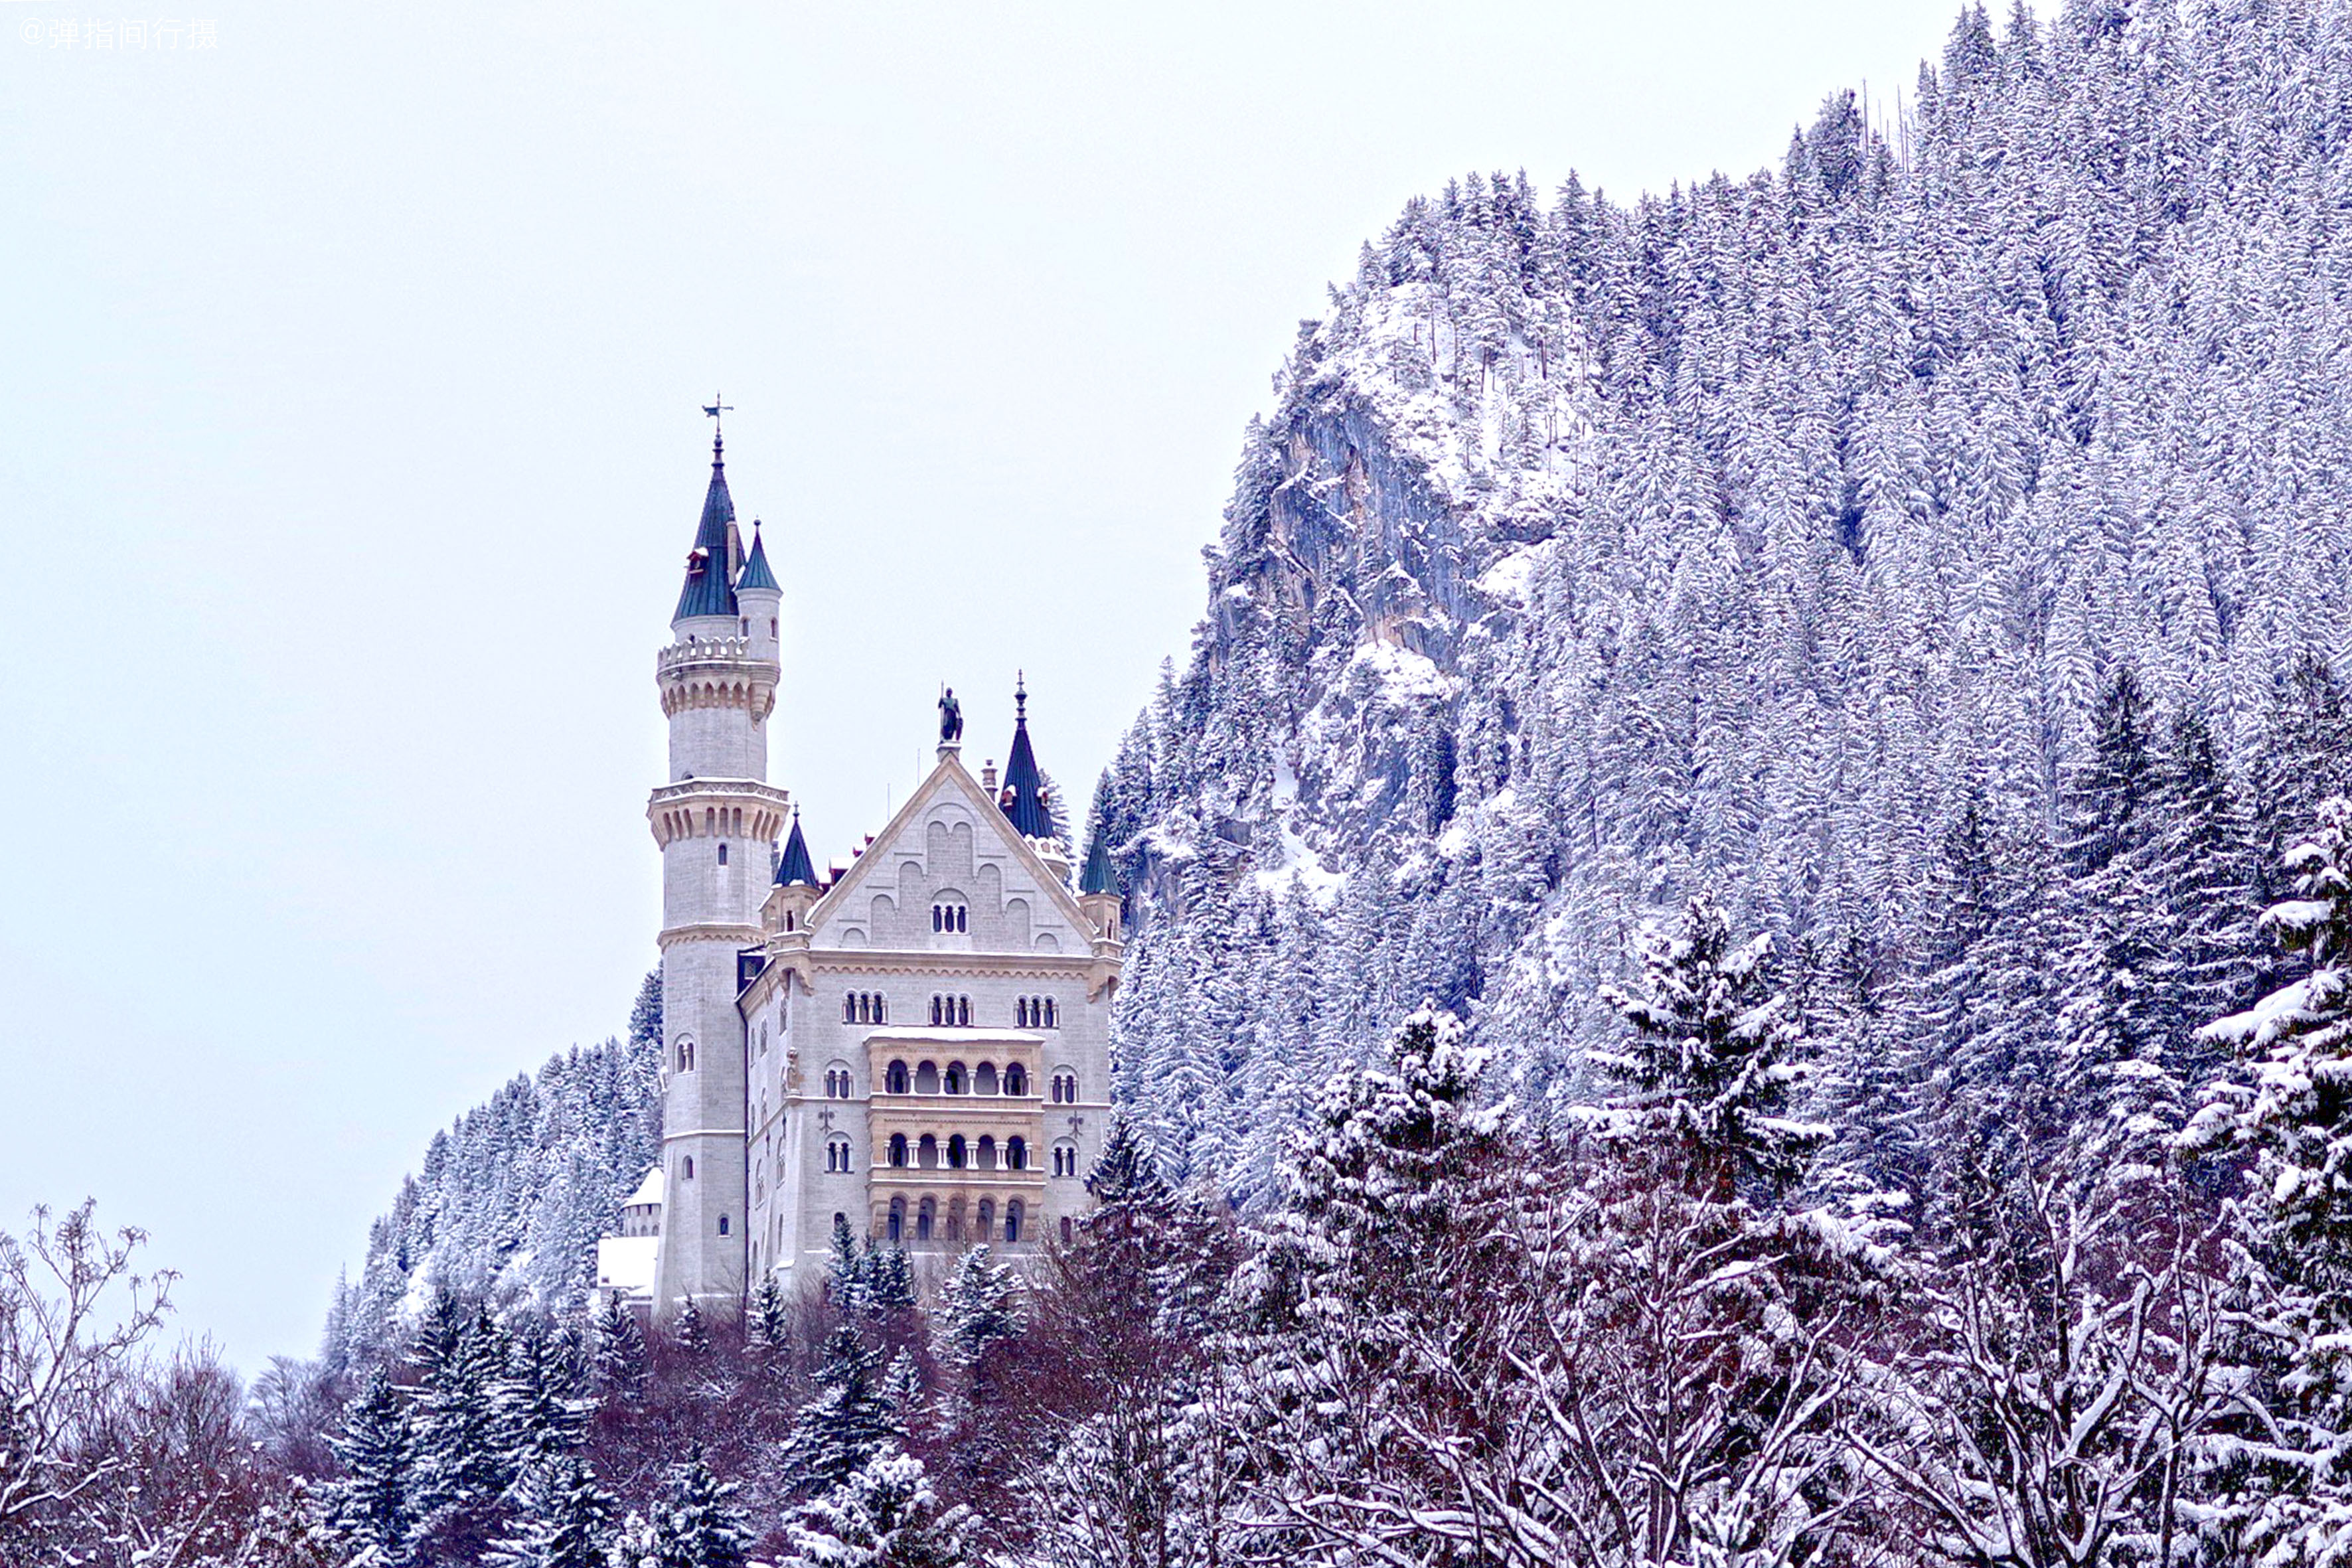 世界上最美城堡,堪称欧洲古典建筑典范,冬季雪景更美如童话仙境